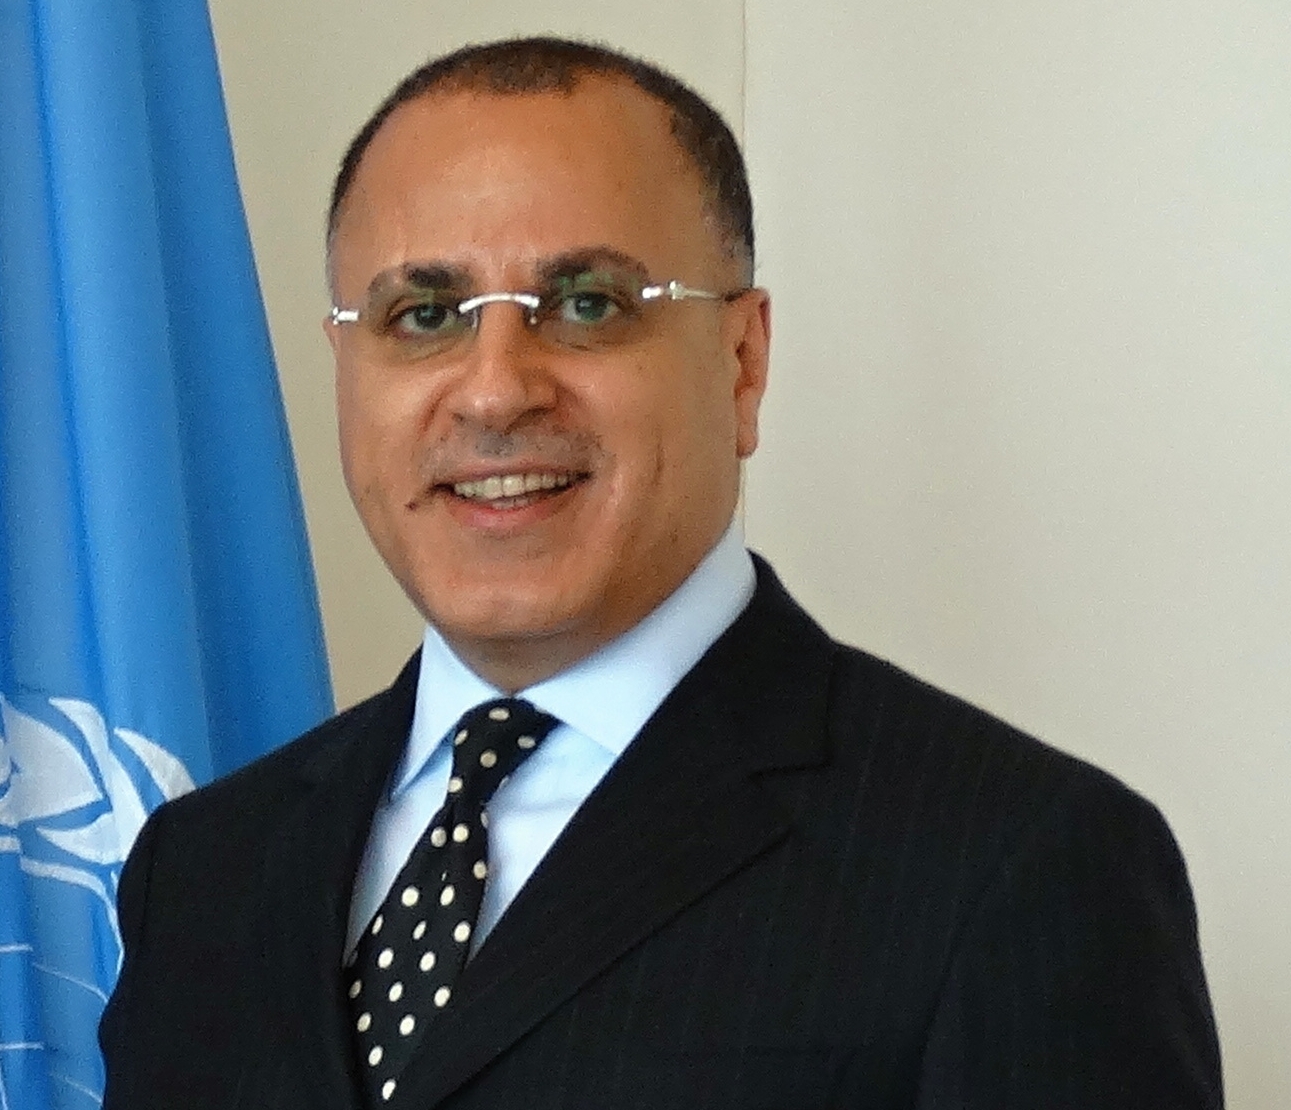 Le délégué permanent du Koweït auprès des Nations unies et d'autres organisations internationales à Genève, l'ambassadeur Jamal Al-Ghonaim